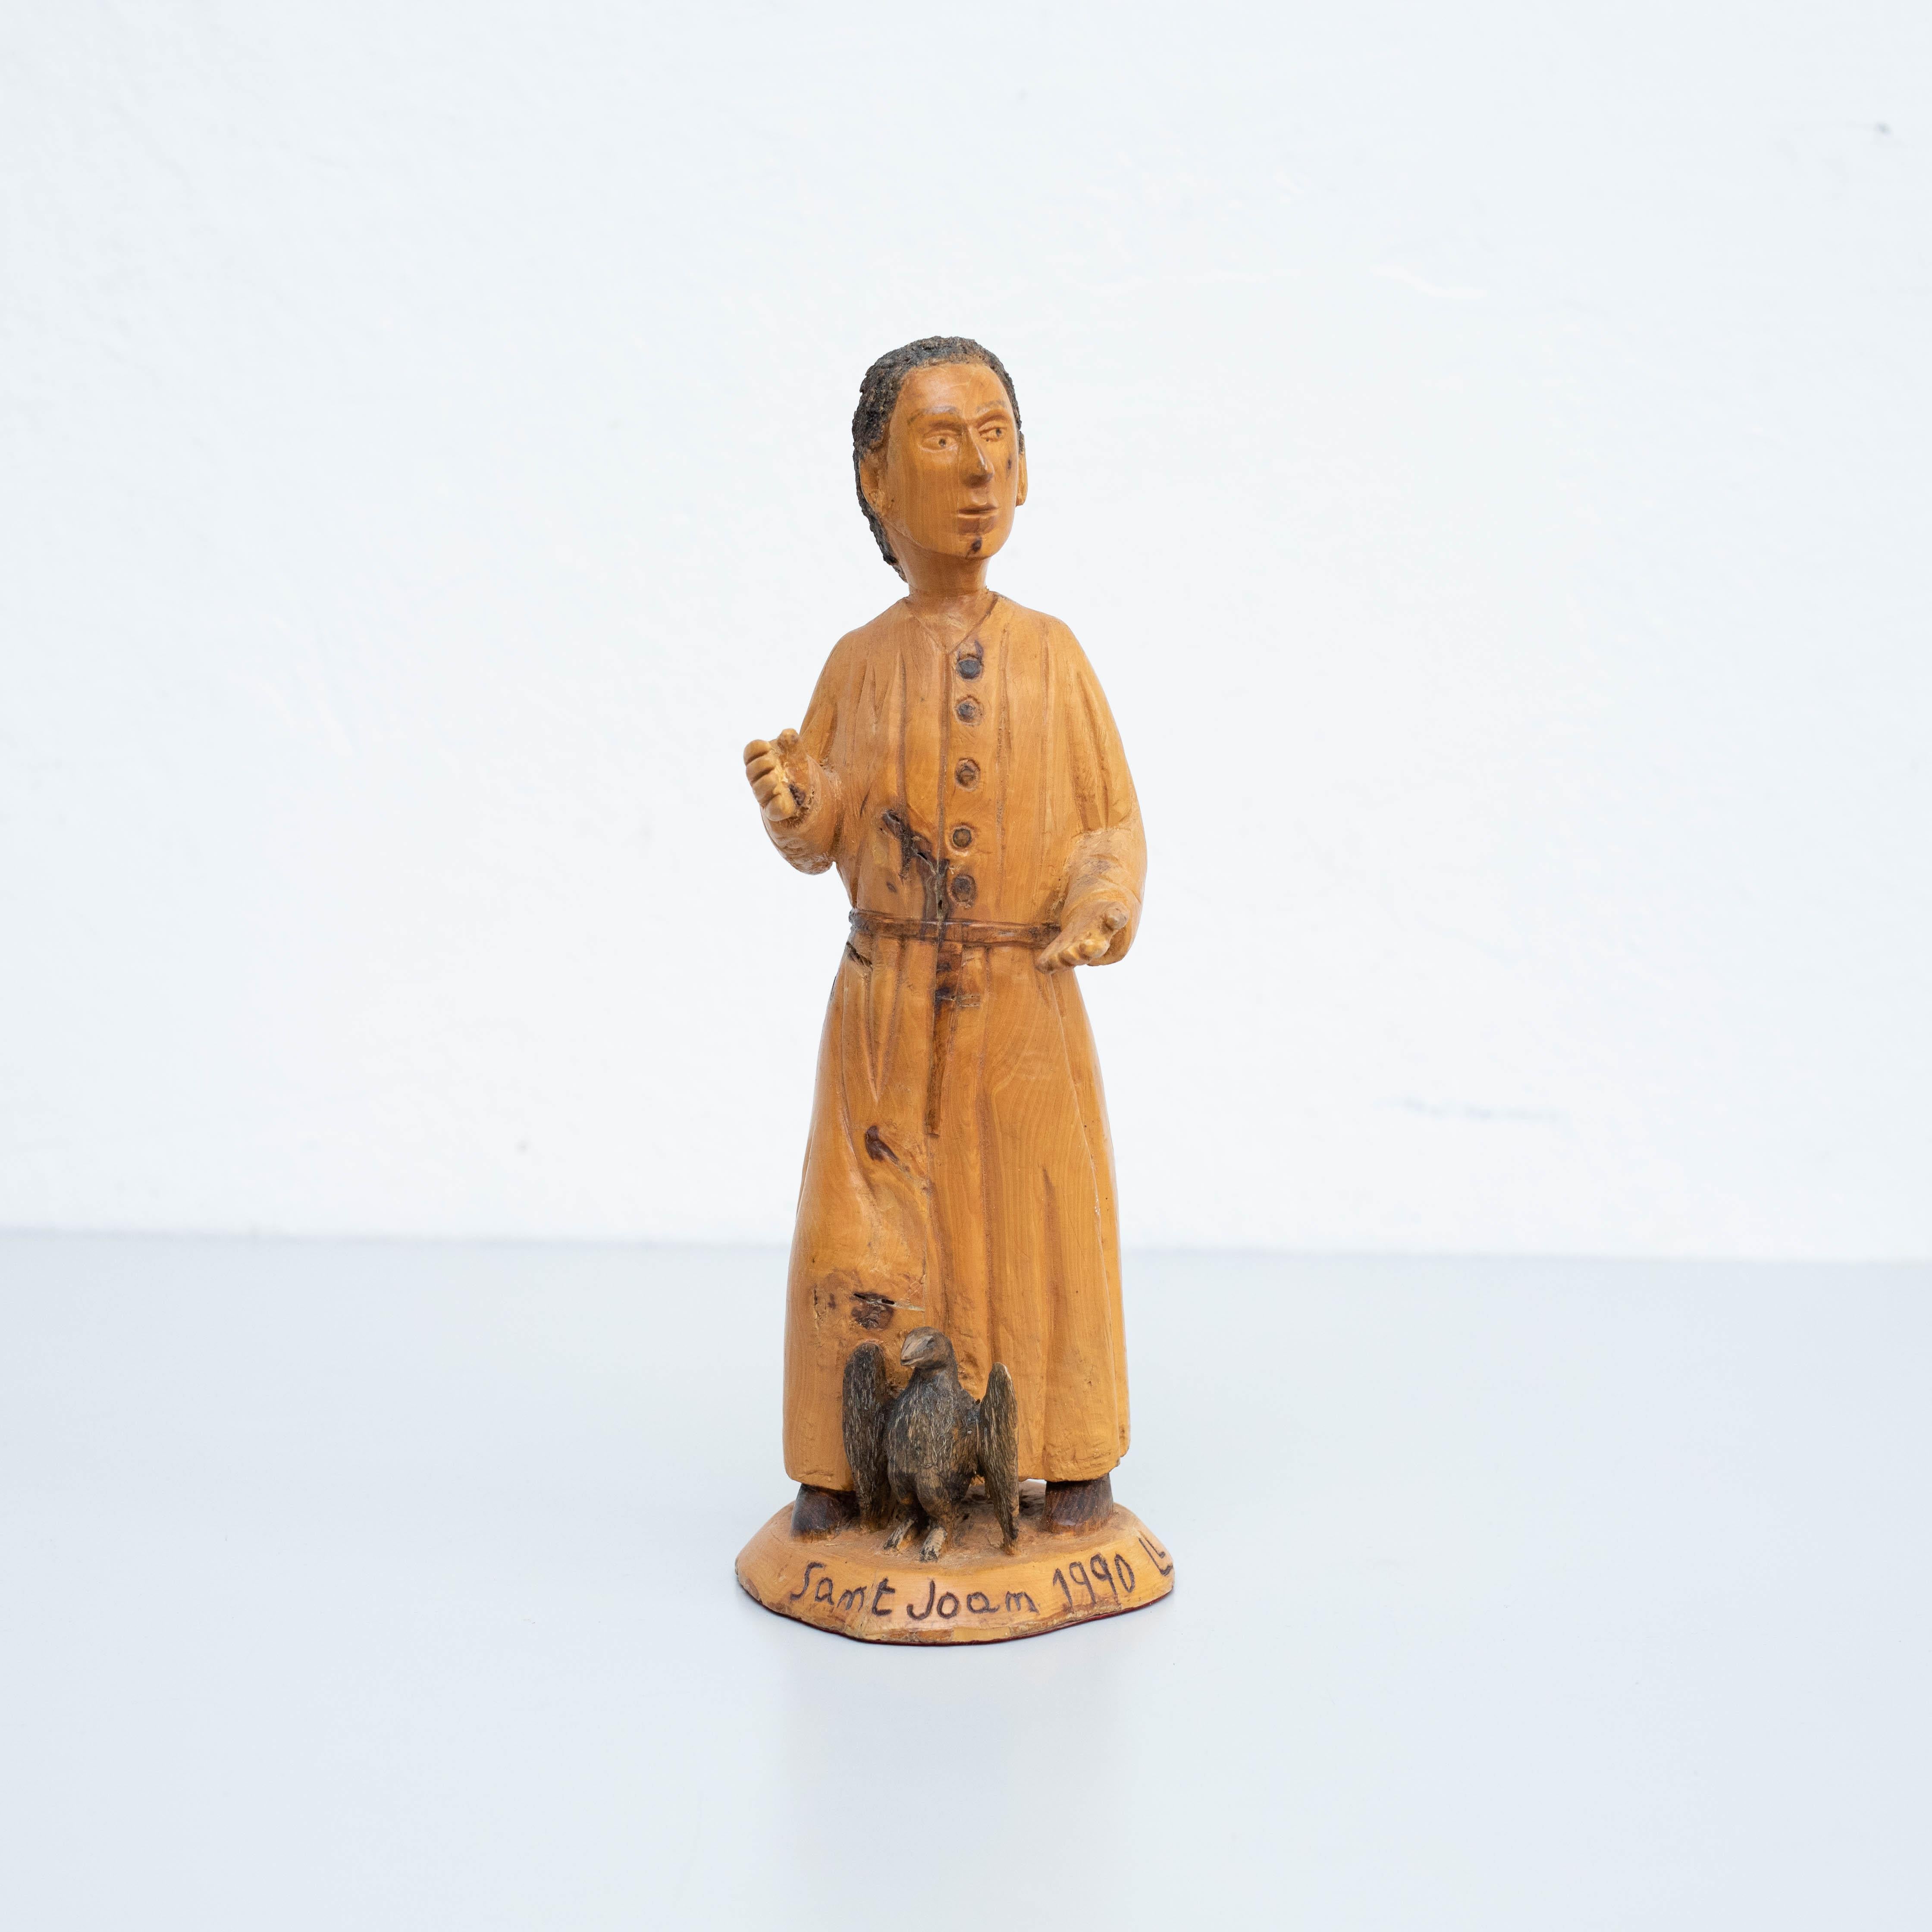 Sculpture Sainte Jeanne d'Art Pastoral traditionnelle en bois.
Fabriqué à la main dans les Pyrénées catalanes, 1990.

Signé par Ll.Pujol

En état d'origine, avec une usure mineure conforme à l'âge et à l'utilisation, préservant une belle